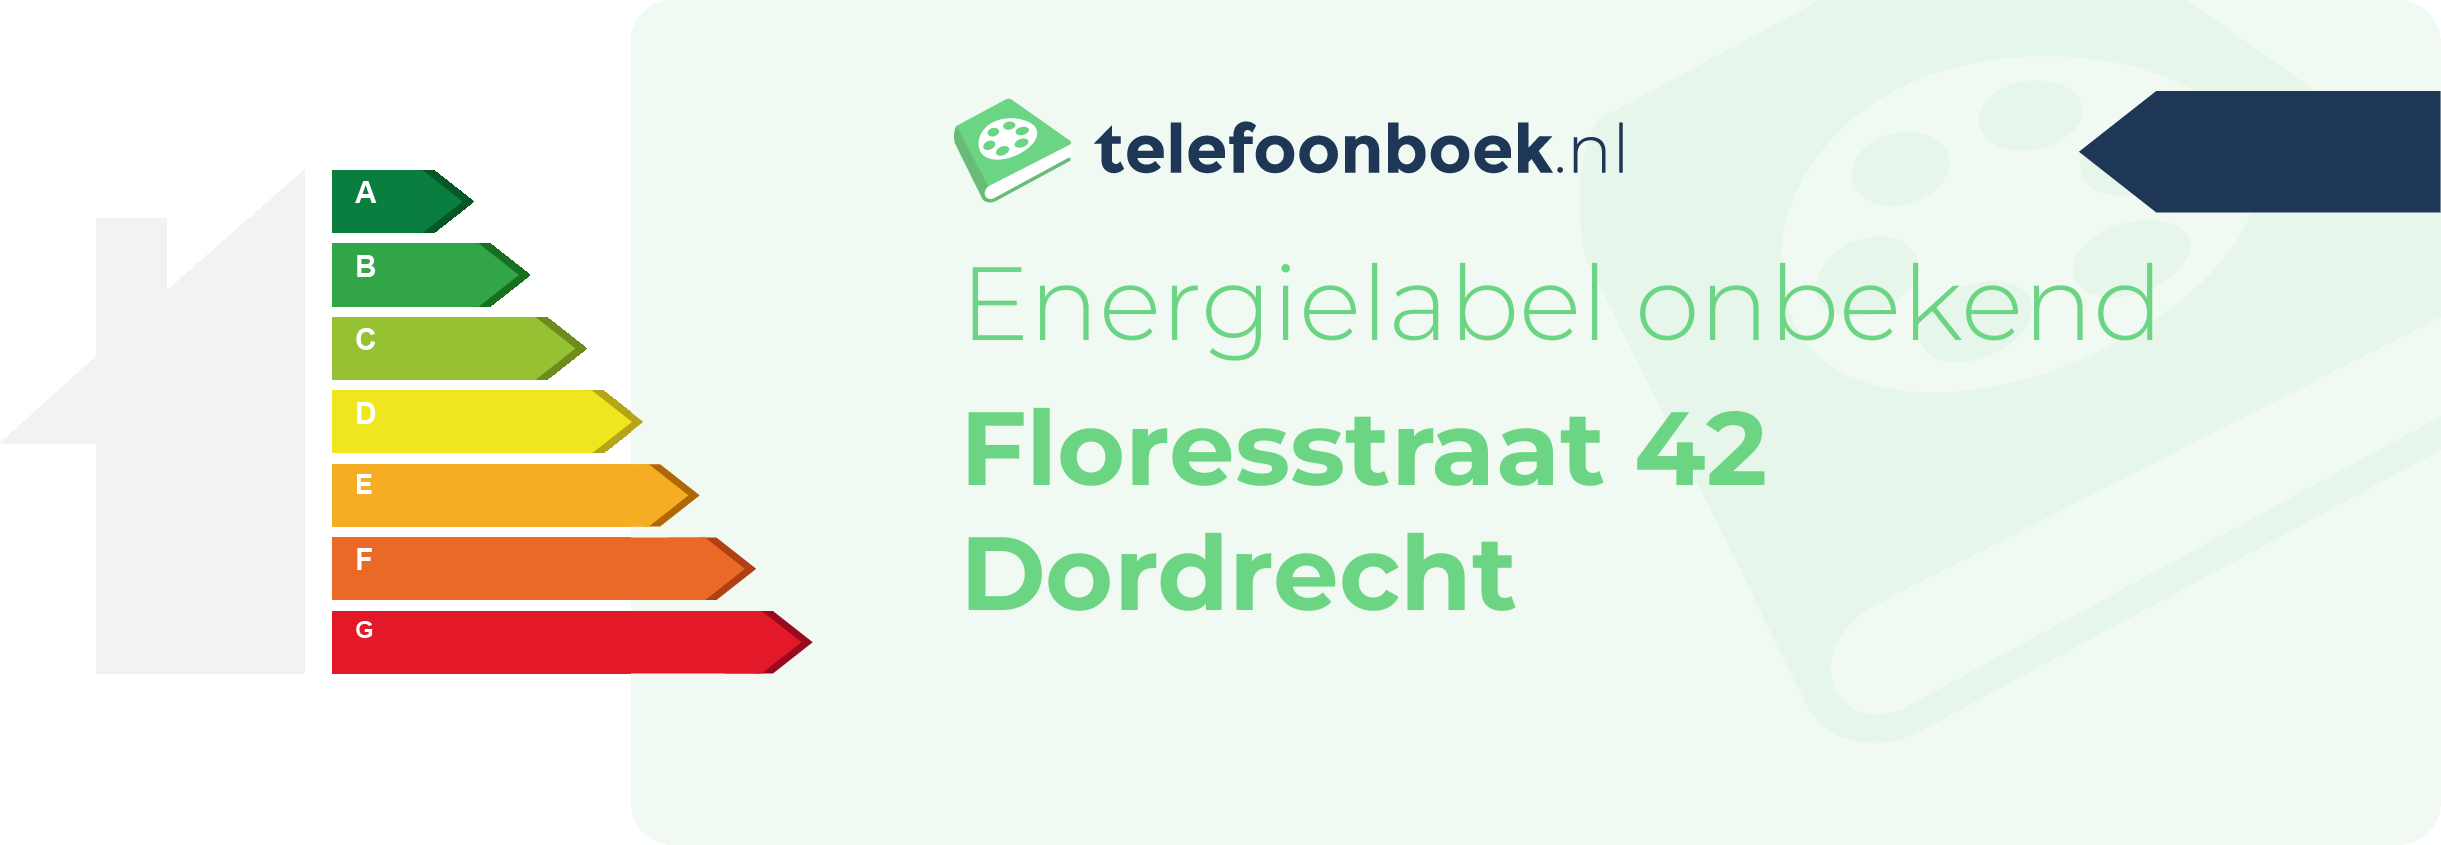 Energielabel Floresstraat 42 Dordrecht